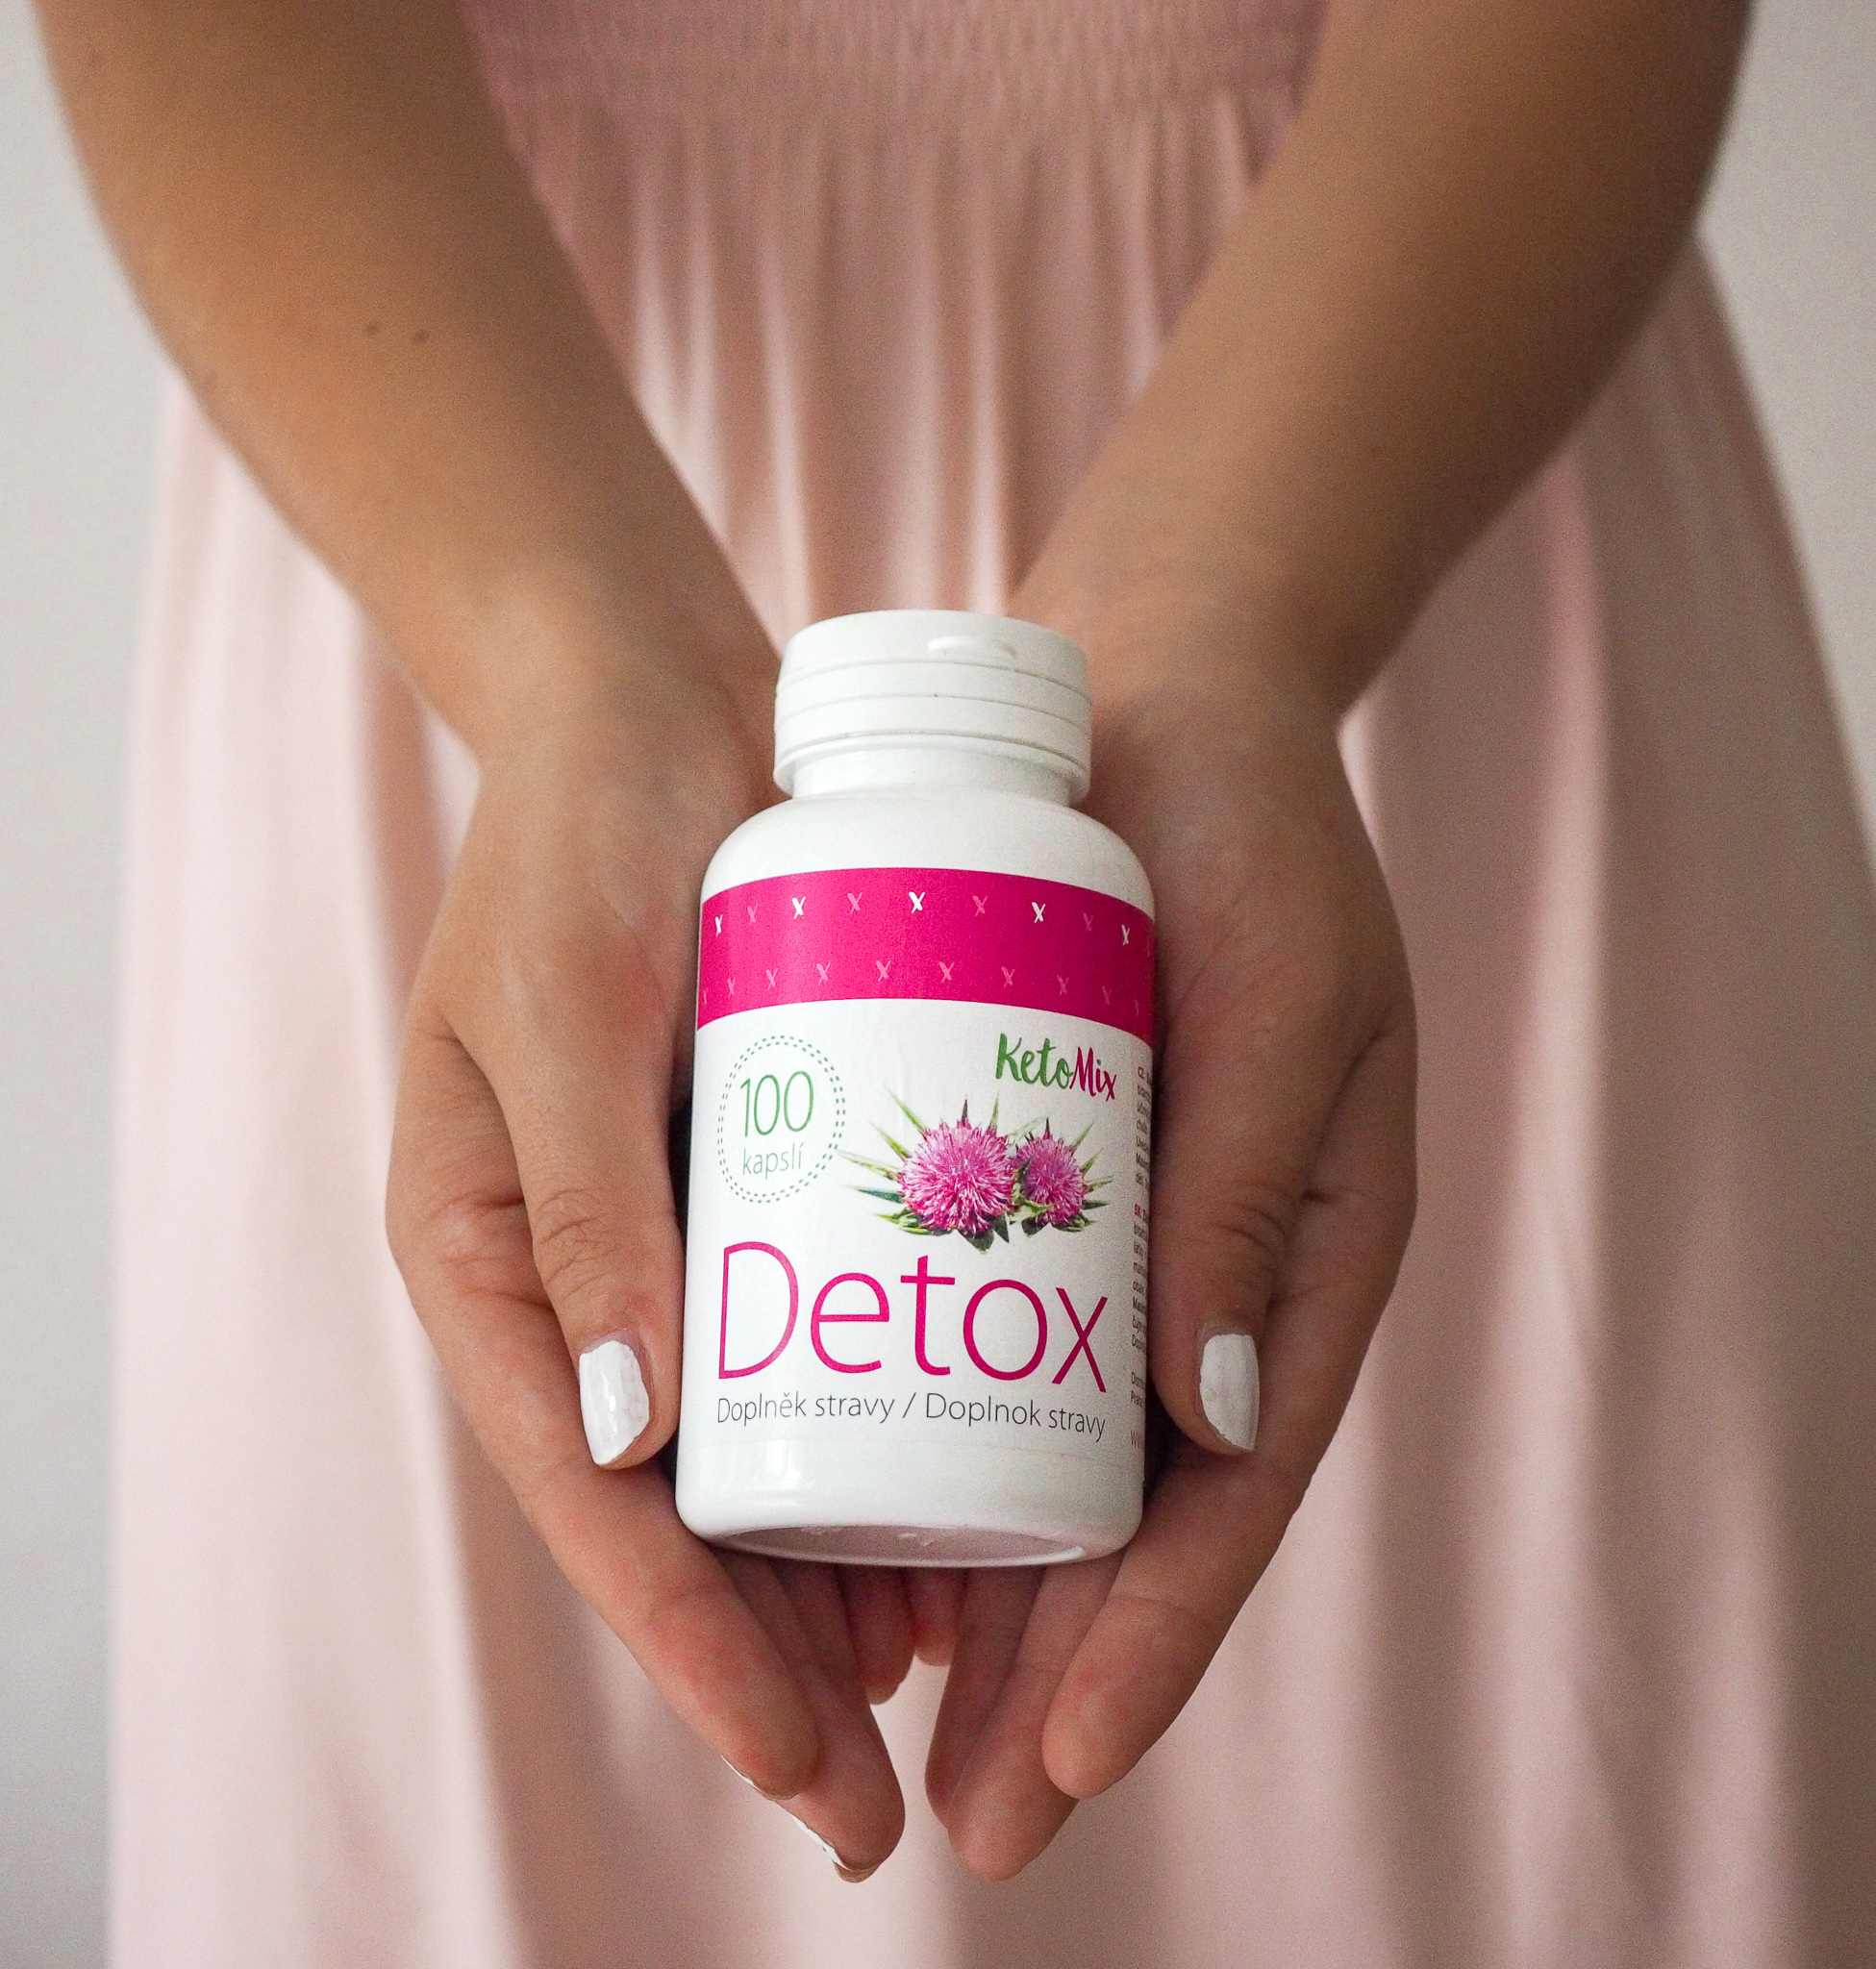 Detox diéta- bizonyítottan hatásos! | Well&fit